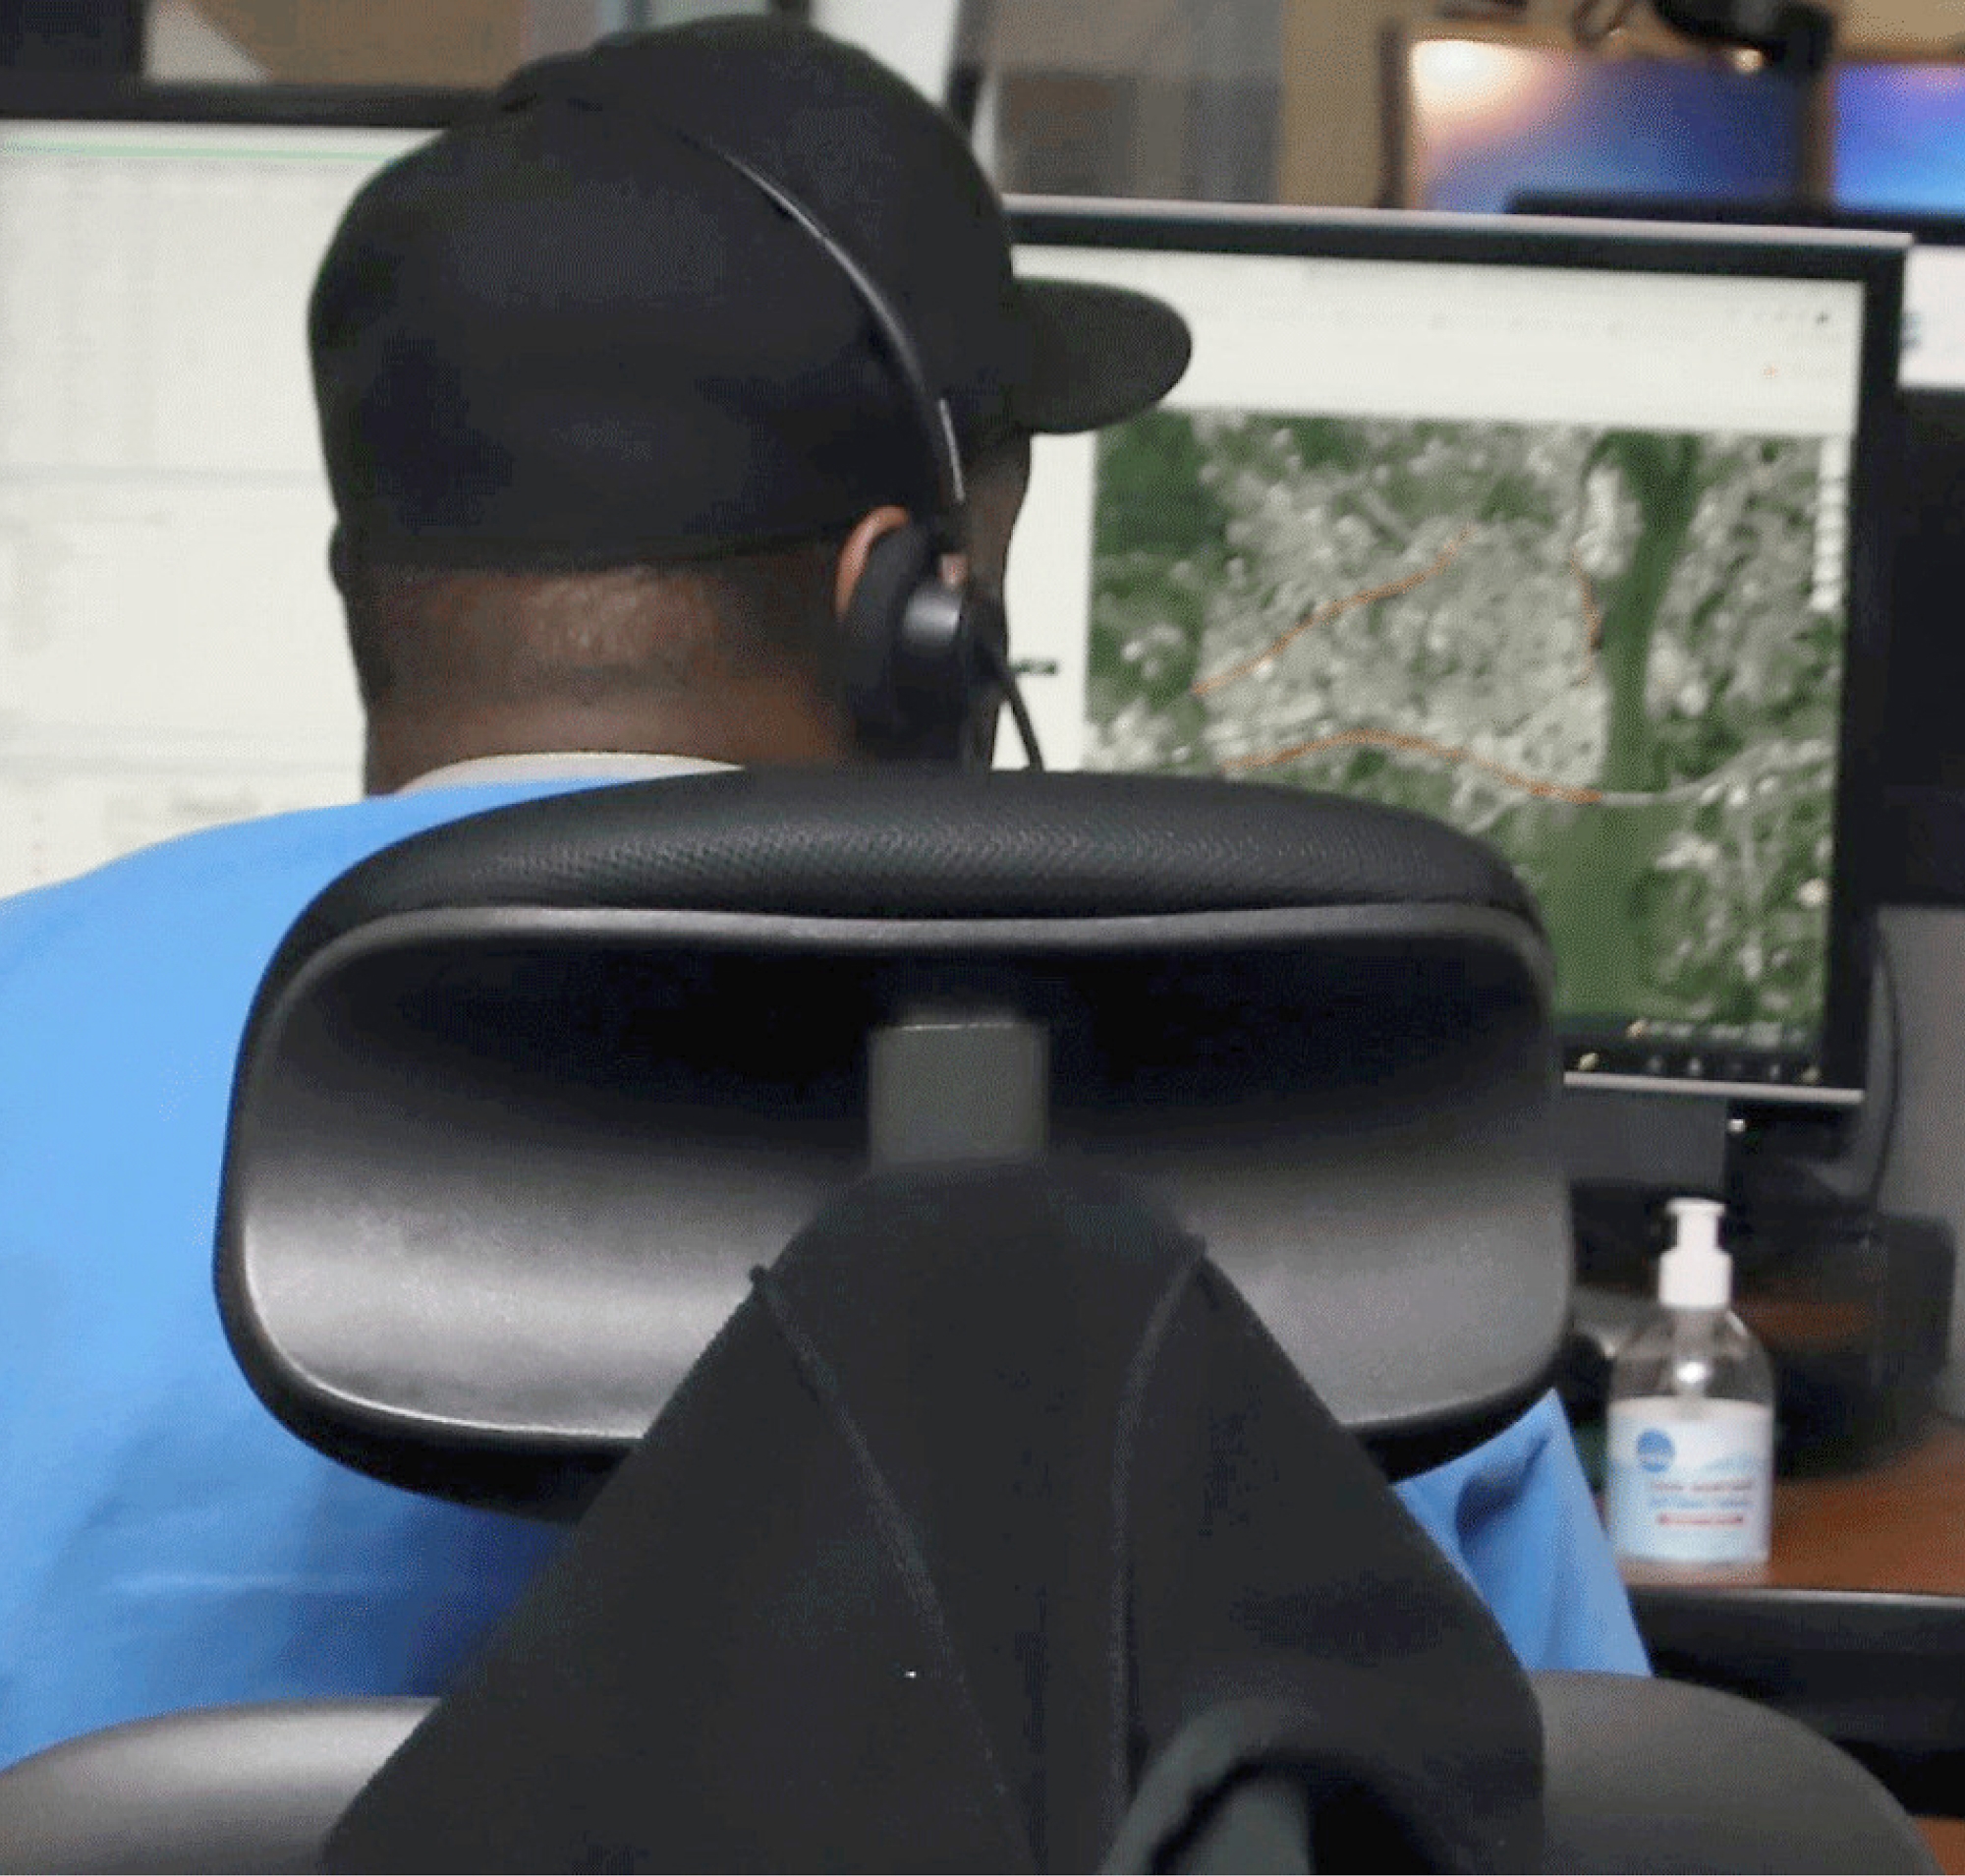 Narancssárga pólós, fekete sapkás férfi ül egy íróasztalnál, fejhallgatót visel és több számítógép képernyőjét nézi.